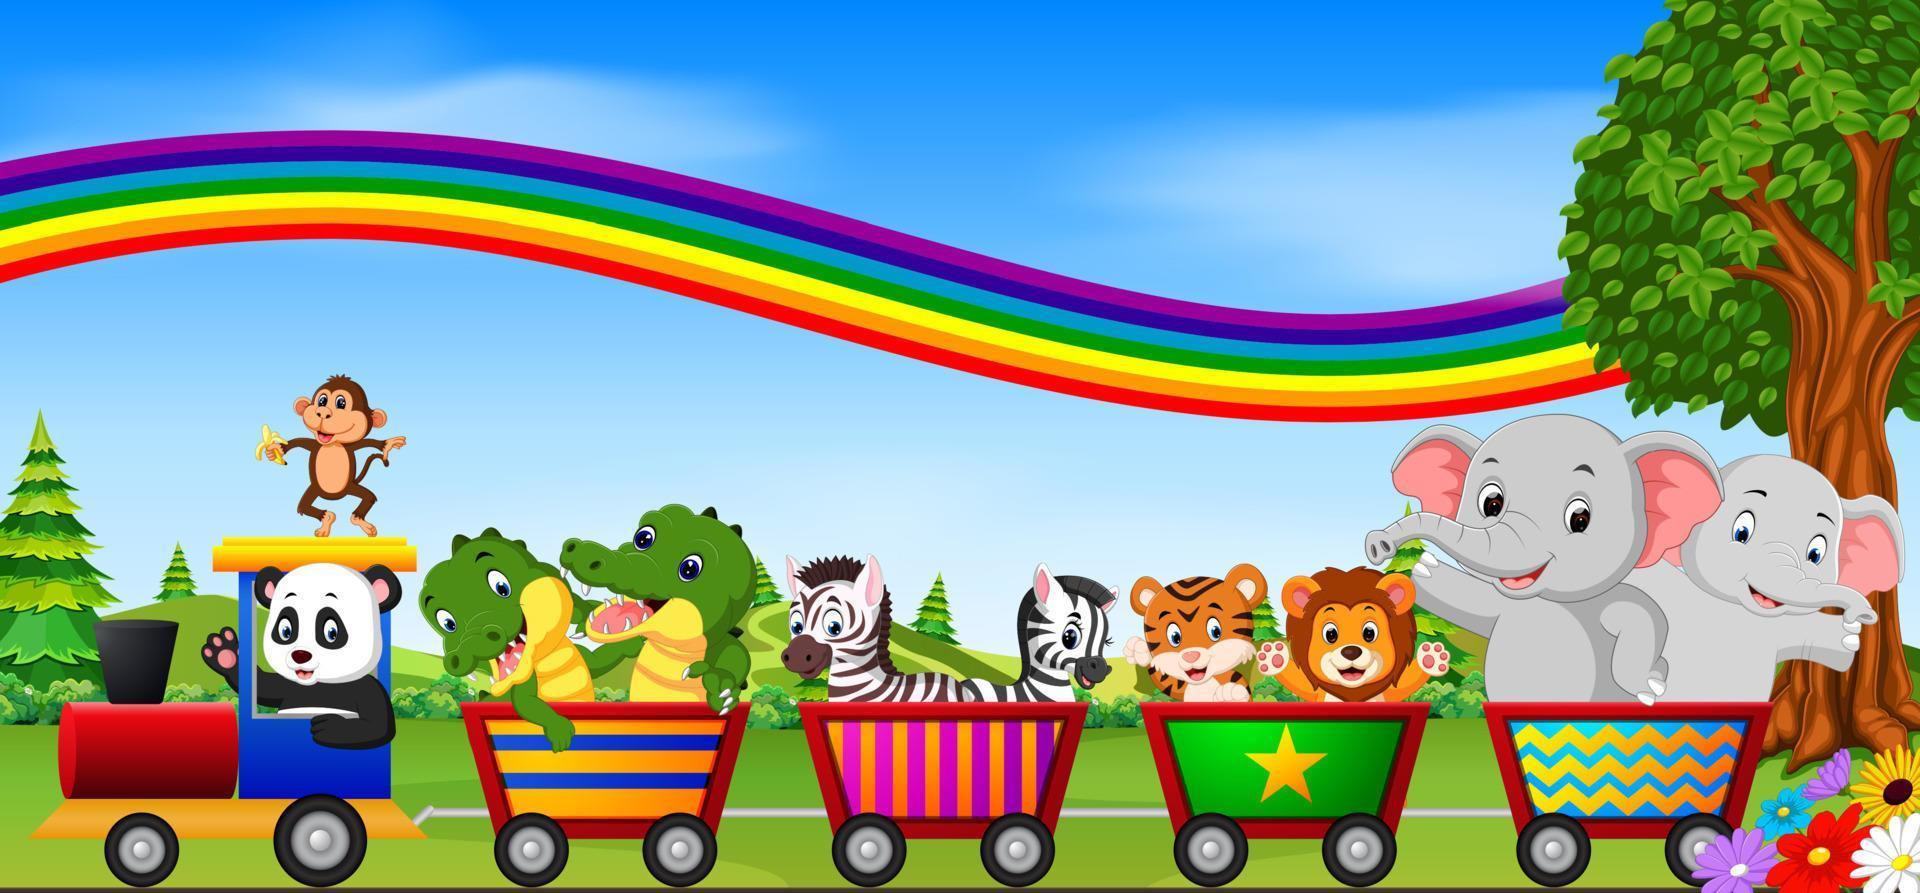 animali selvatici sul treno con illustrazione arcobaleno vettore